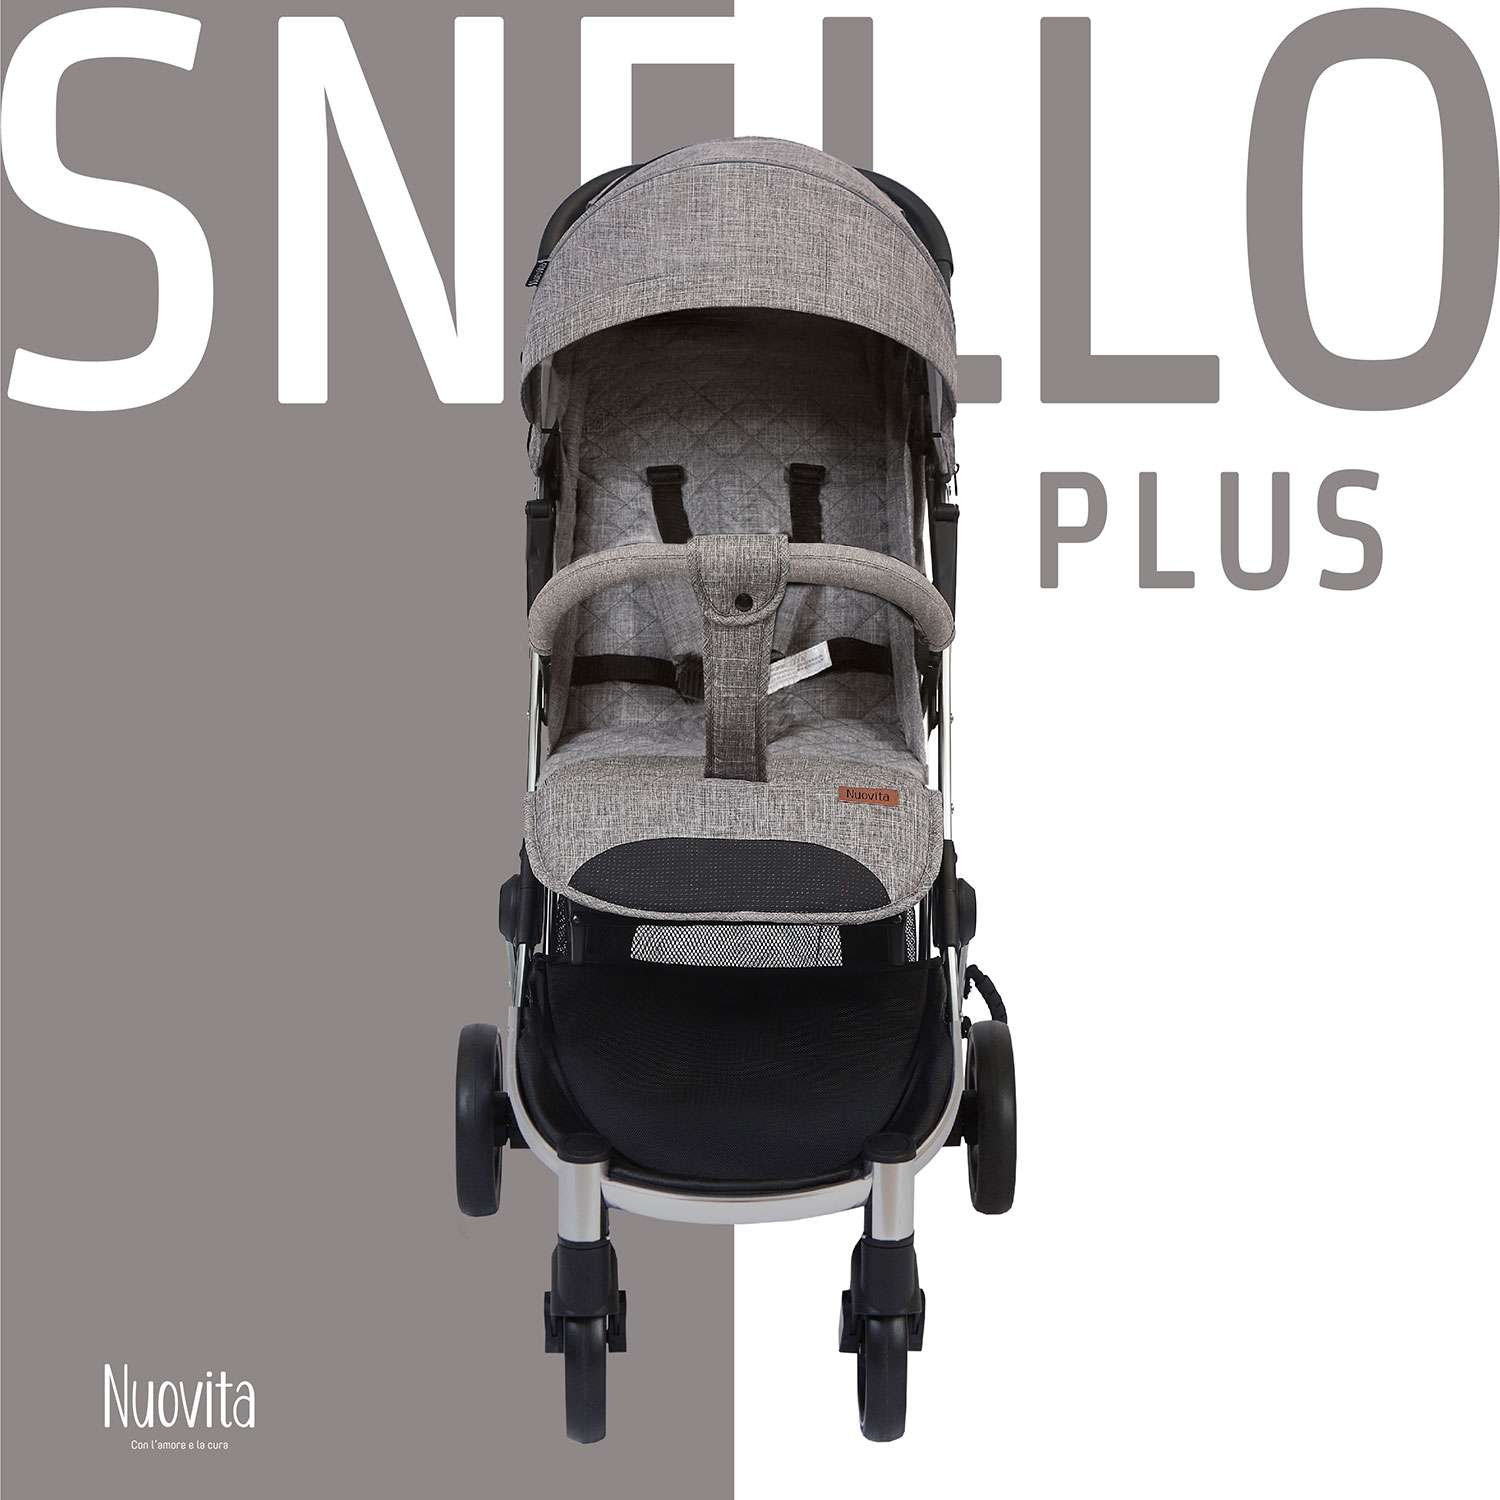 Коляска прогулочная Nuovita Snello Plus Темно-серый лен - фото 3